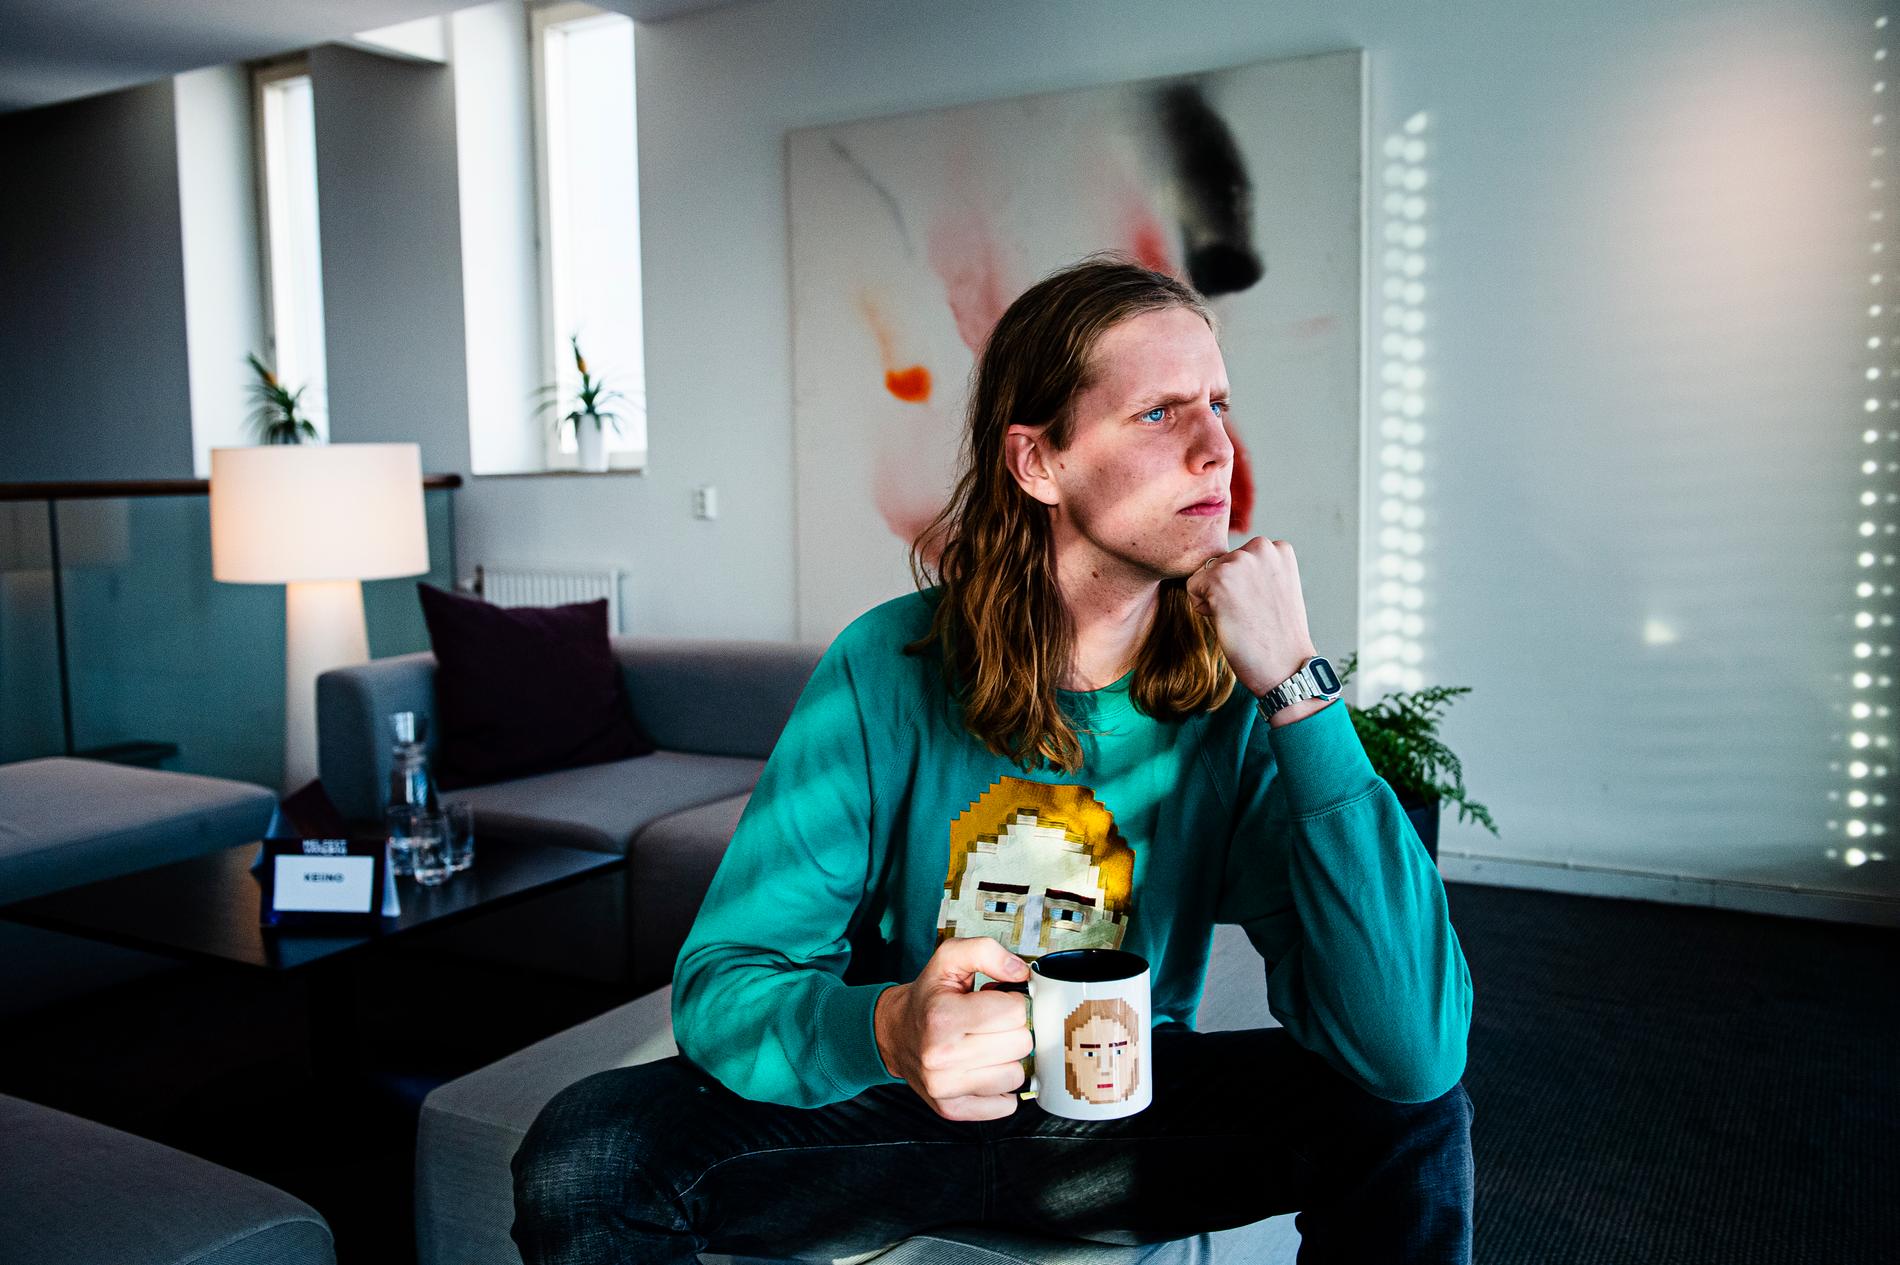 Daði Freyr tävlar för Island i Eurovision song contest 2020 med låten ”Think about things”